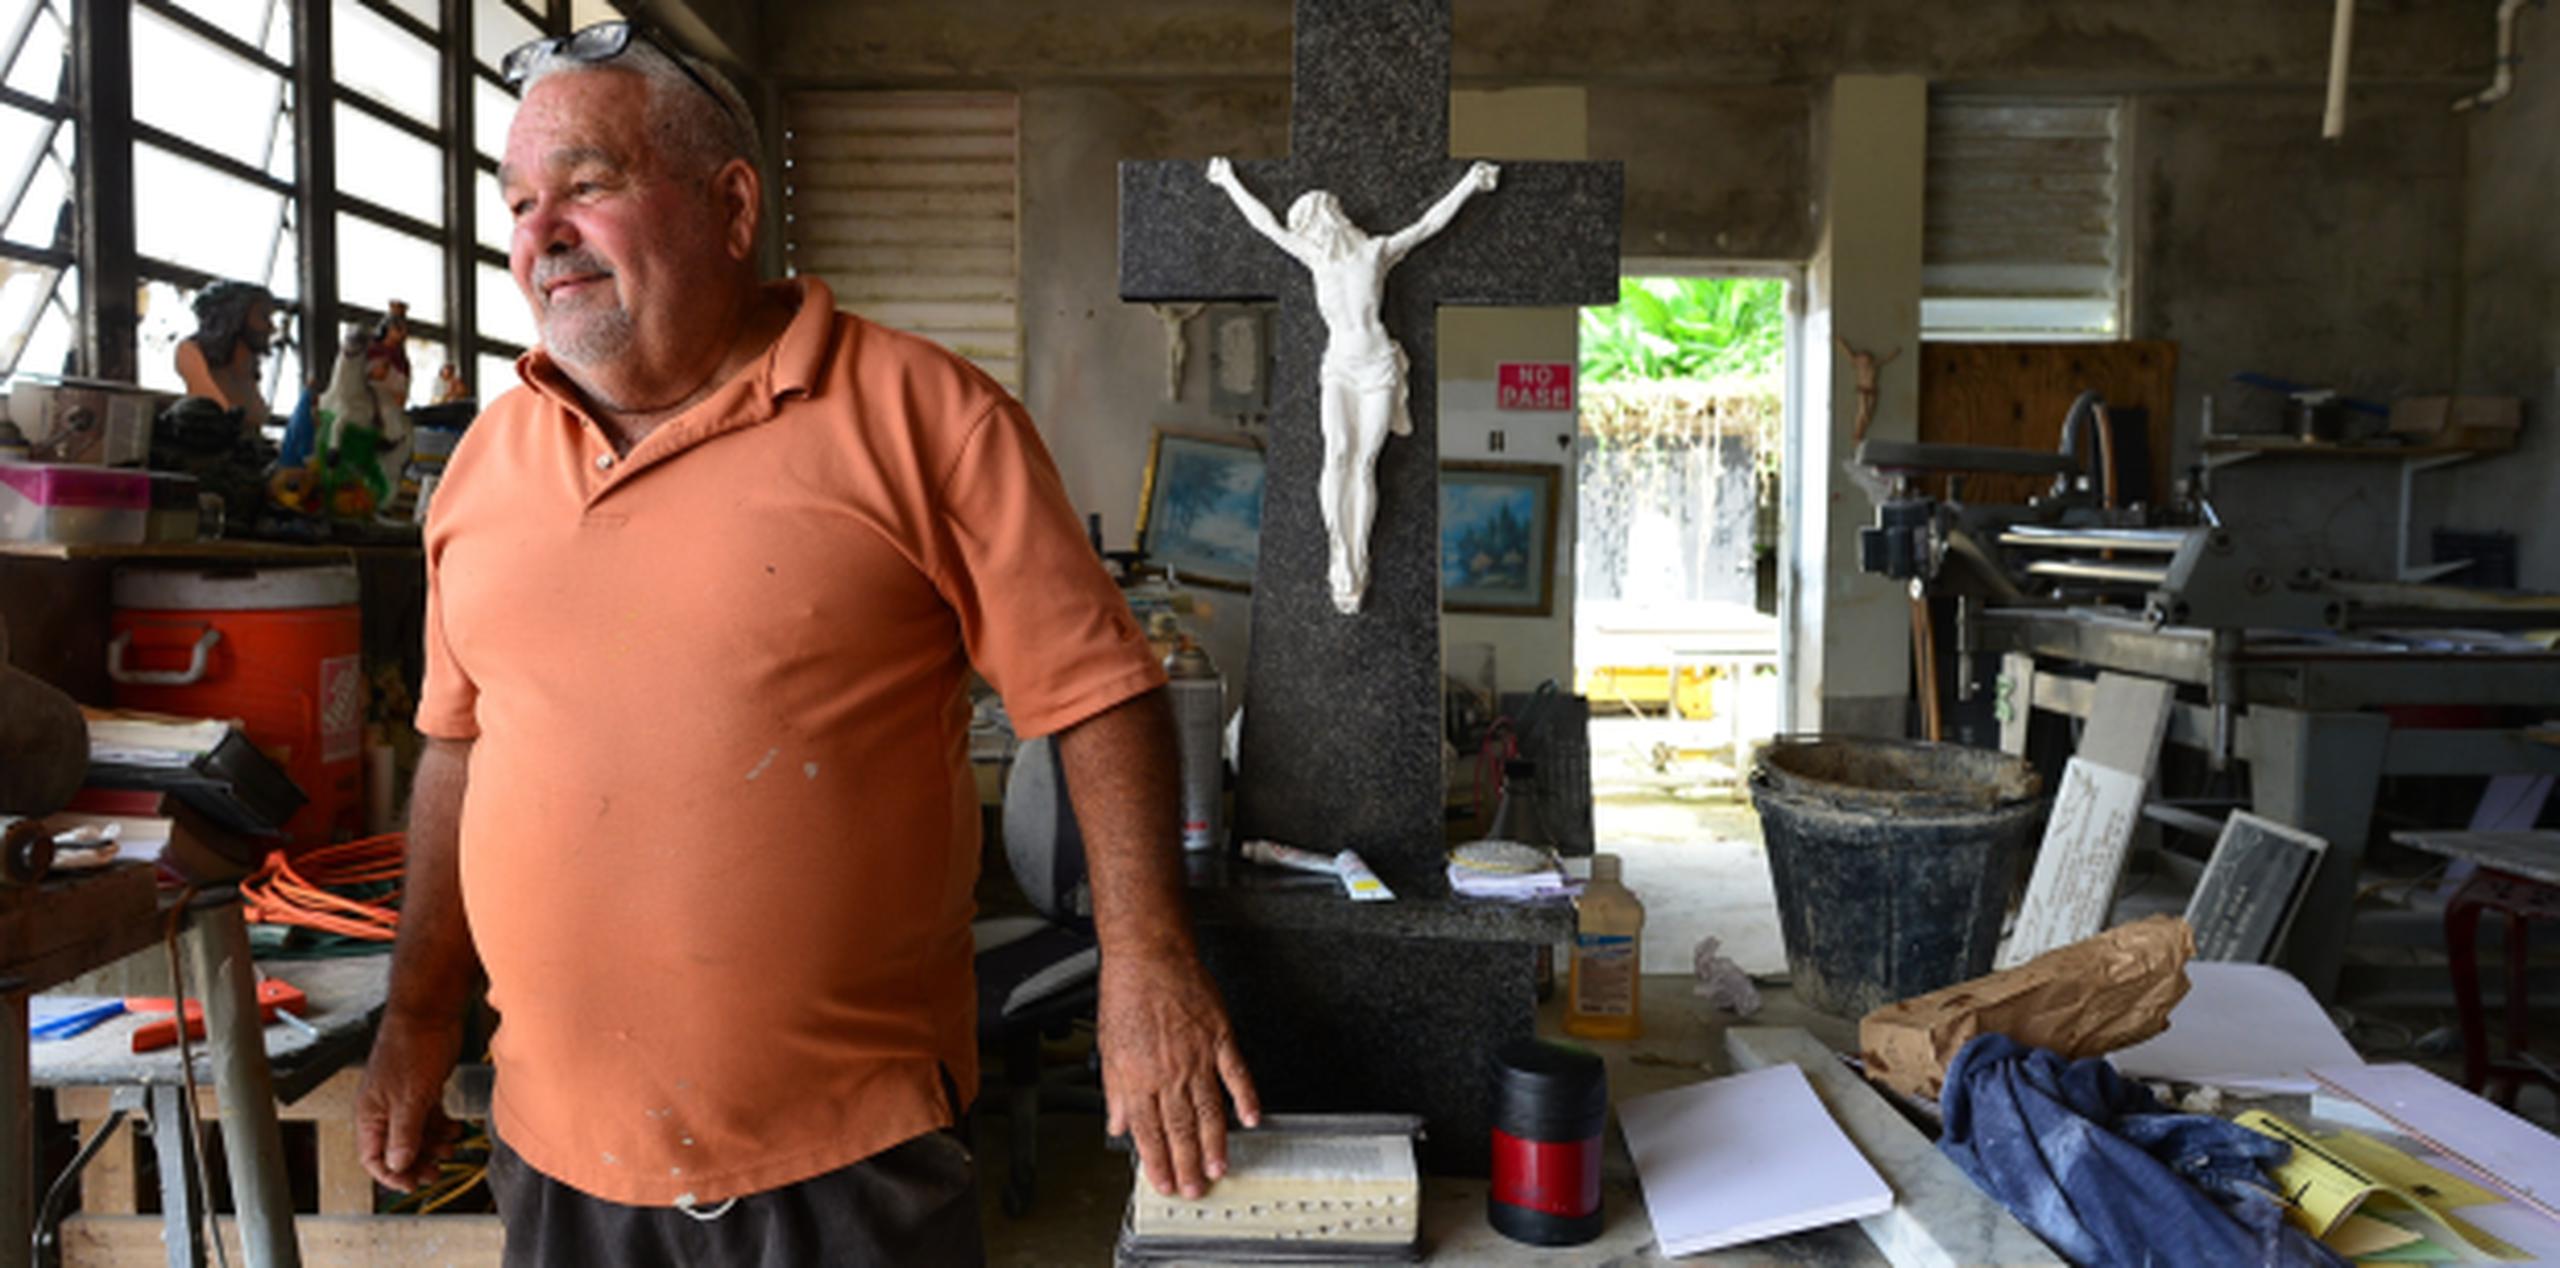 El sepulturero Luis Robles describió como “un desastre” la situación en la “Ciudad del Grito”. (luis.alcala@gfrmedia.com)